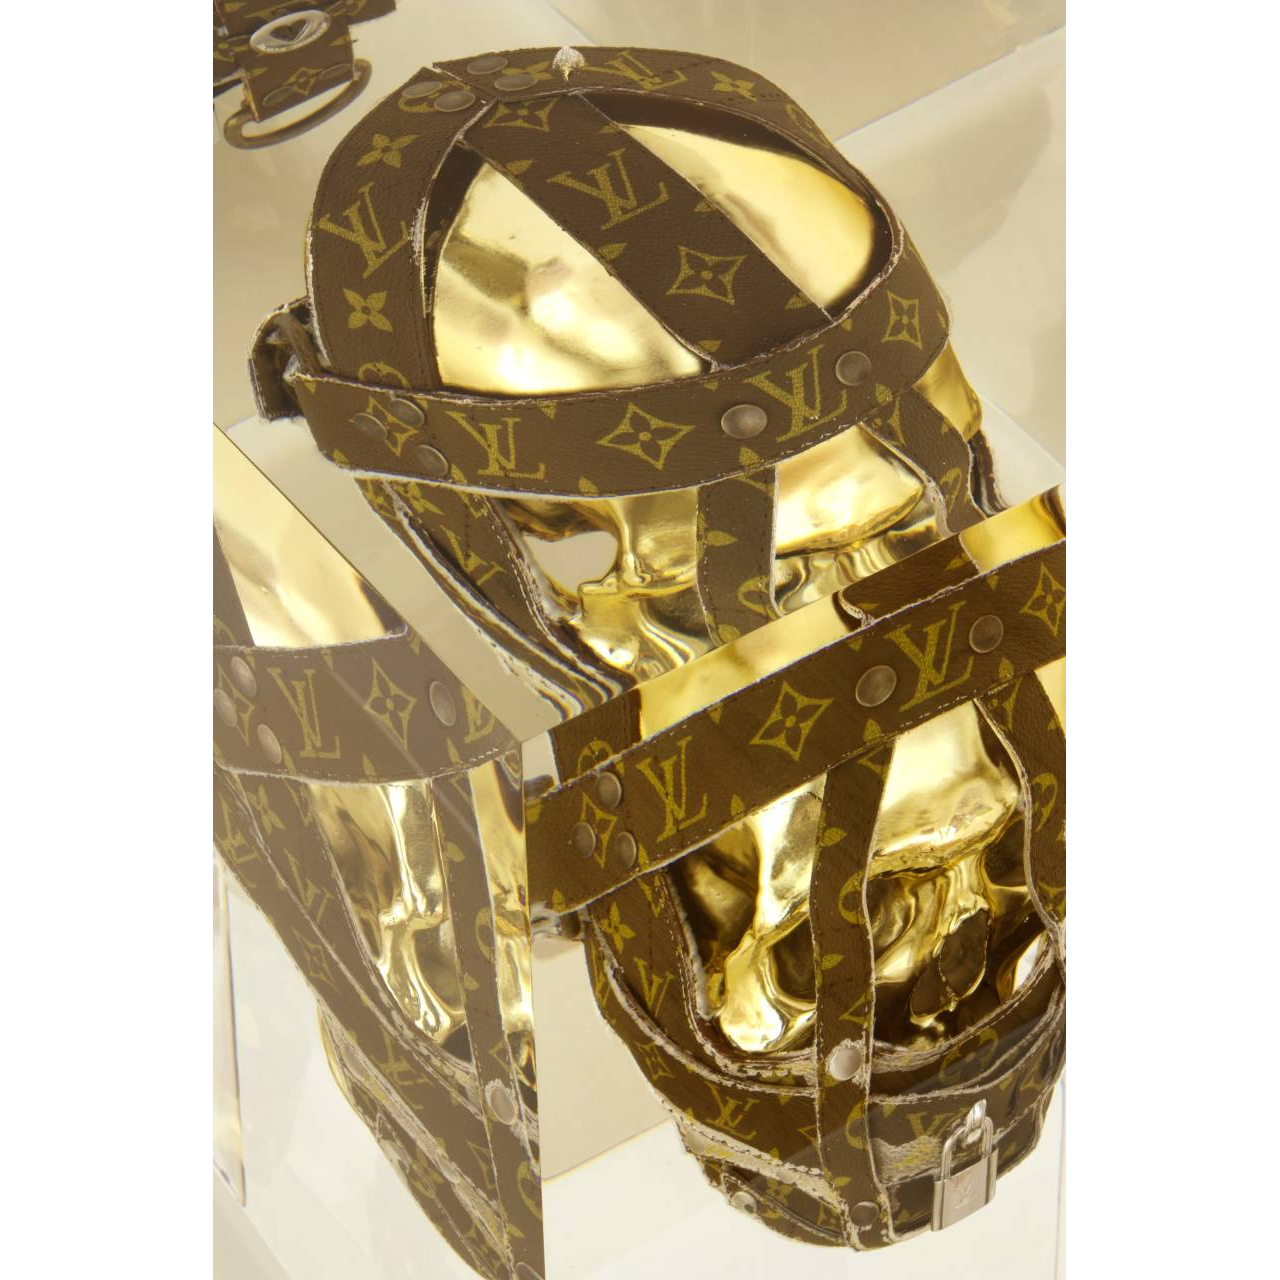 Alexandre NICOLAS, Slave to luxe, ( Crane Vuitton ), Inclusion de cristal syntèse et résine, 33 X 28 X 30 cm